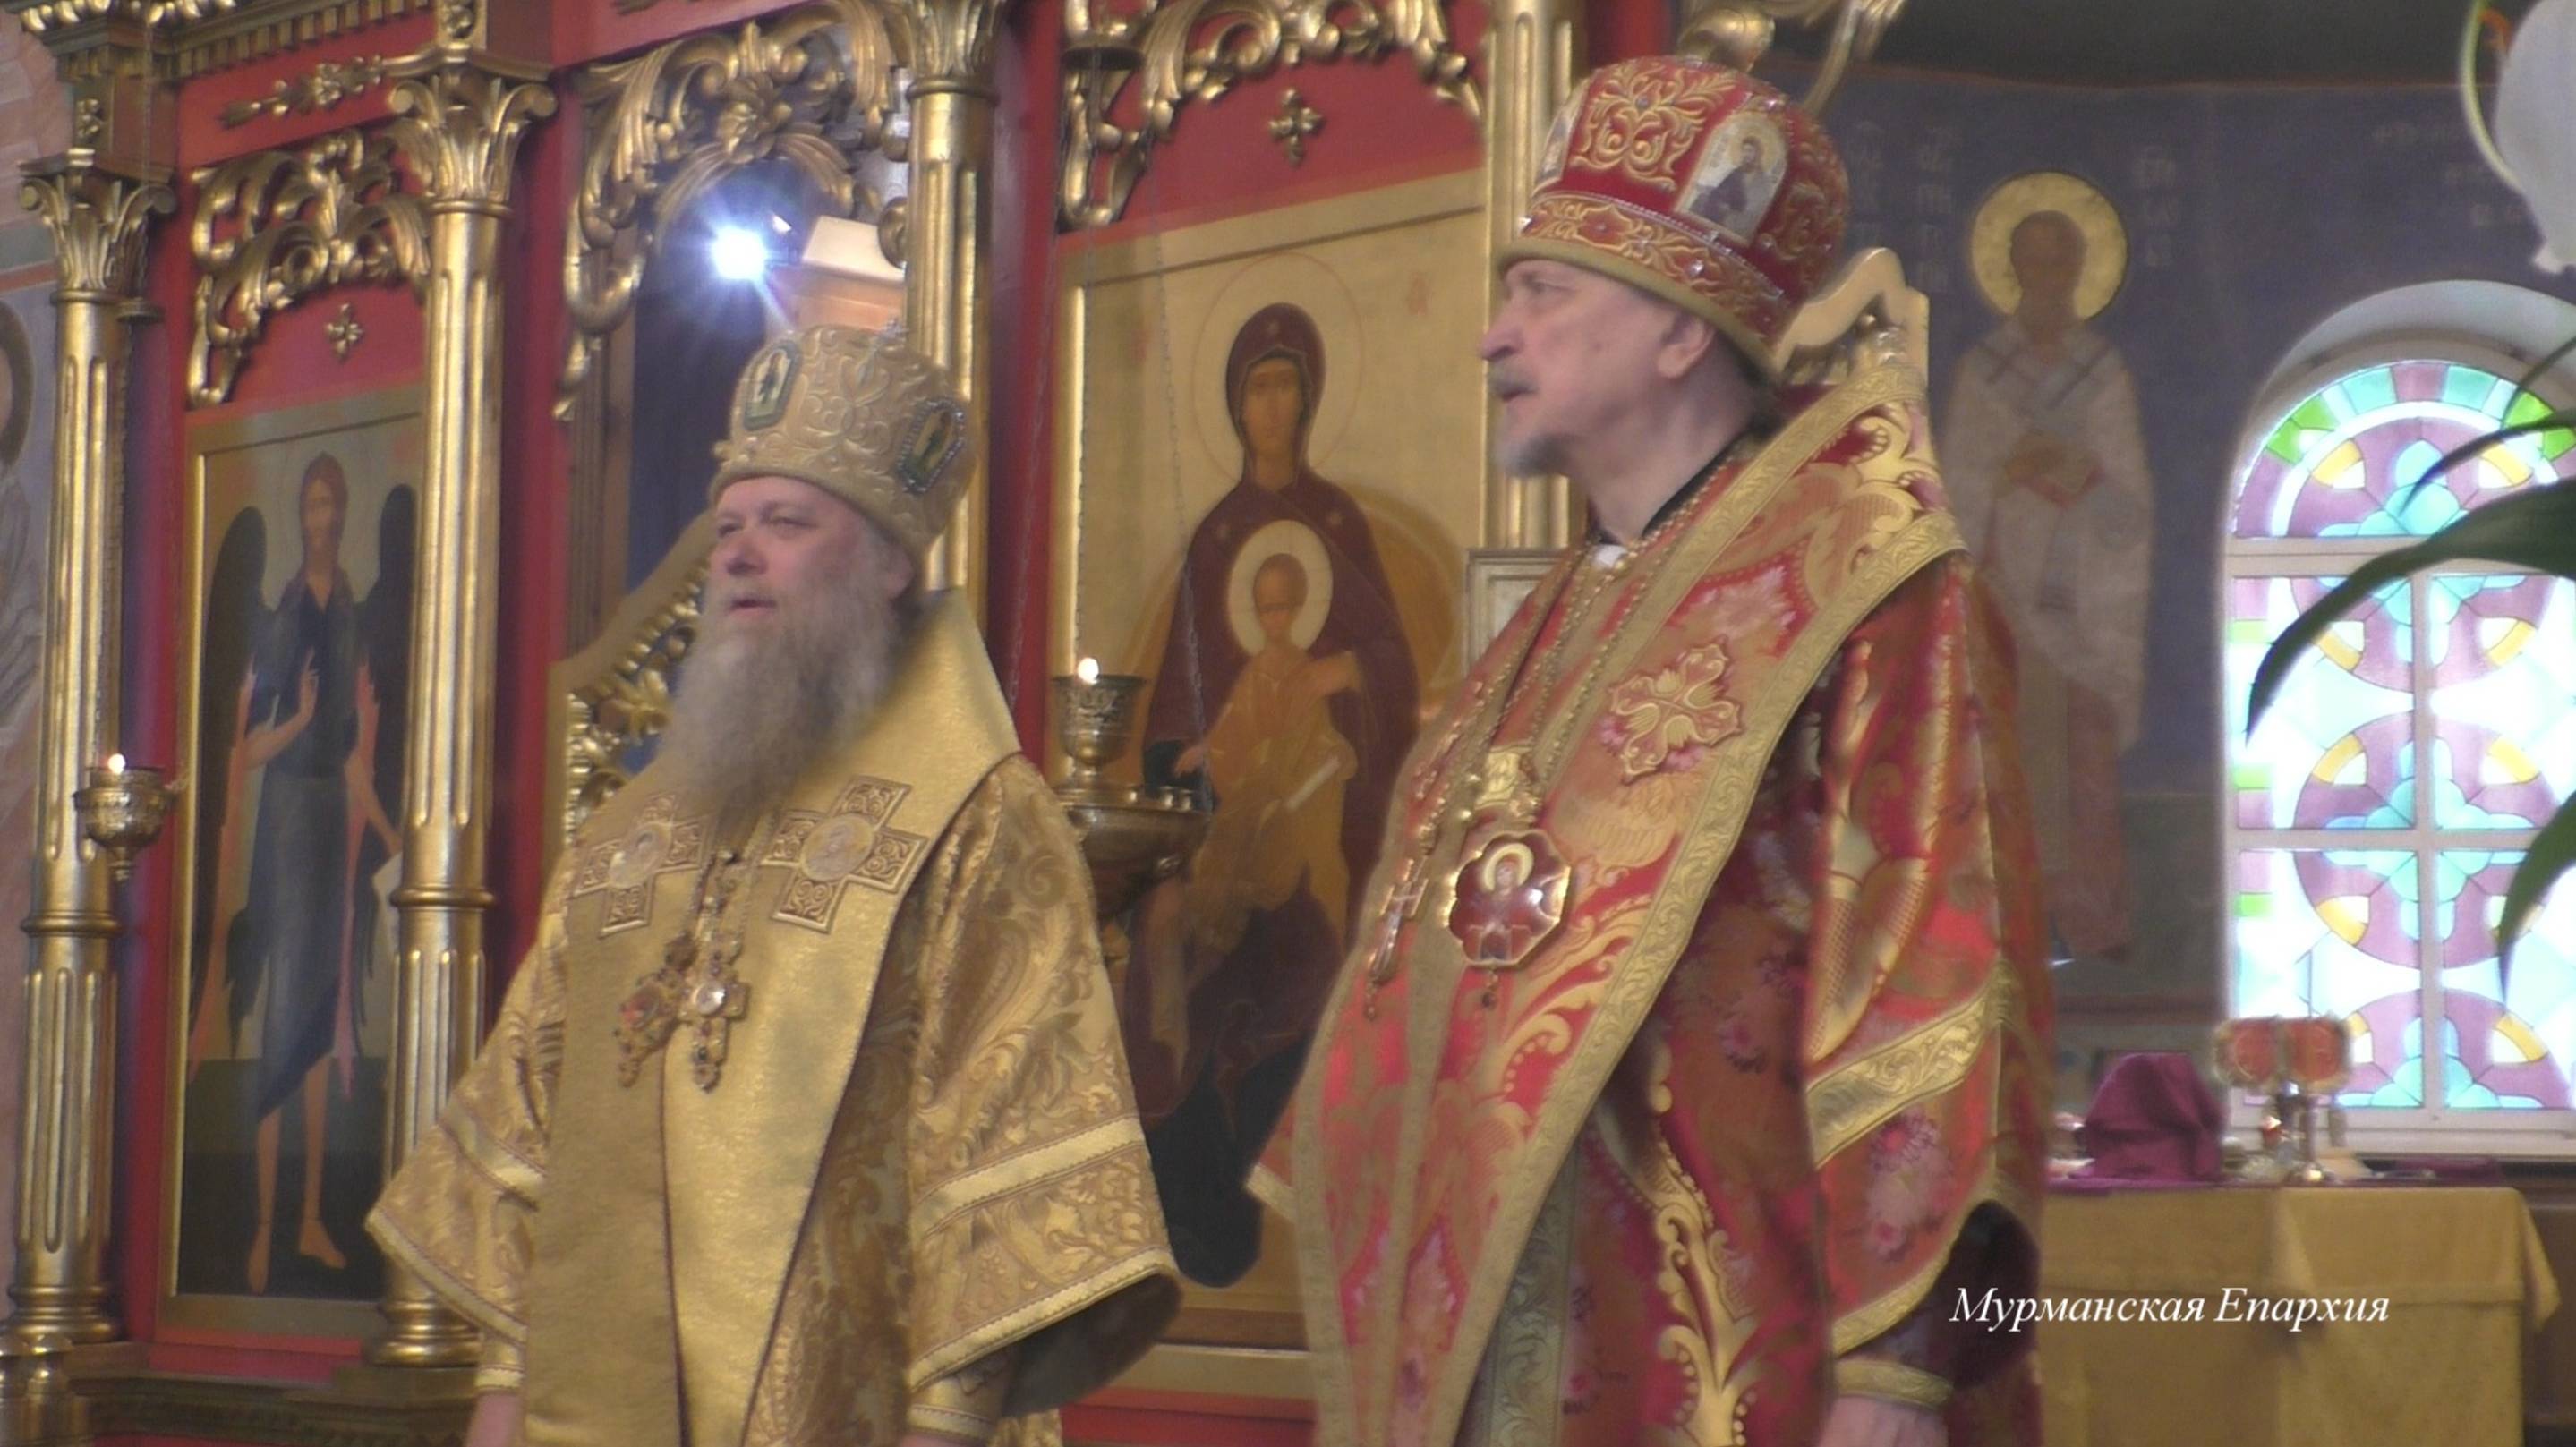 О связи Русского Севера с Соловками и почитании Царя-мученика